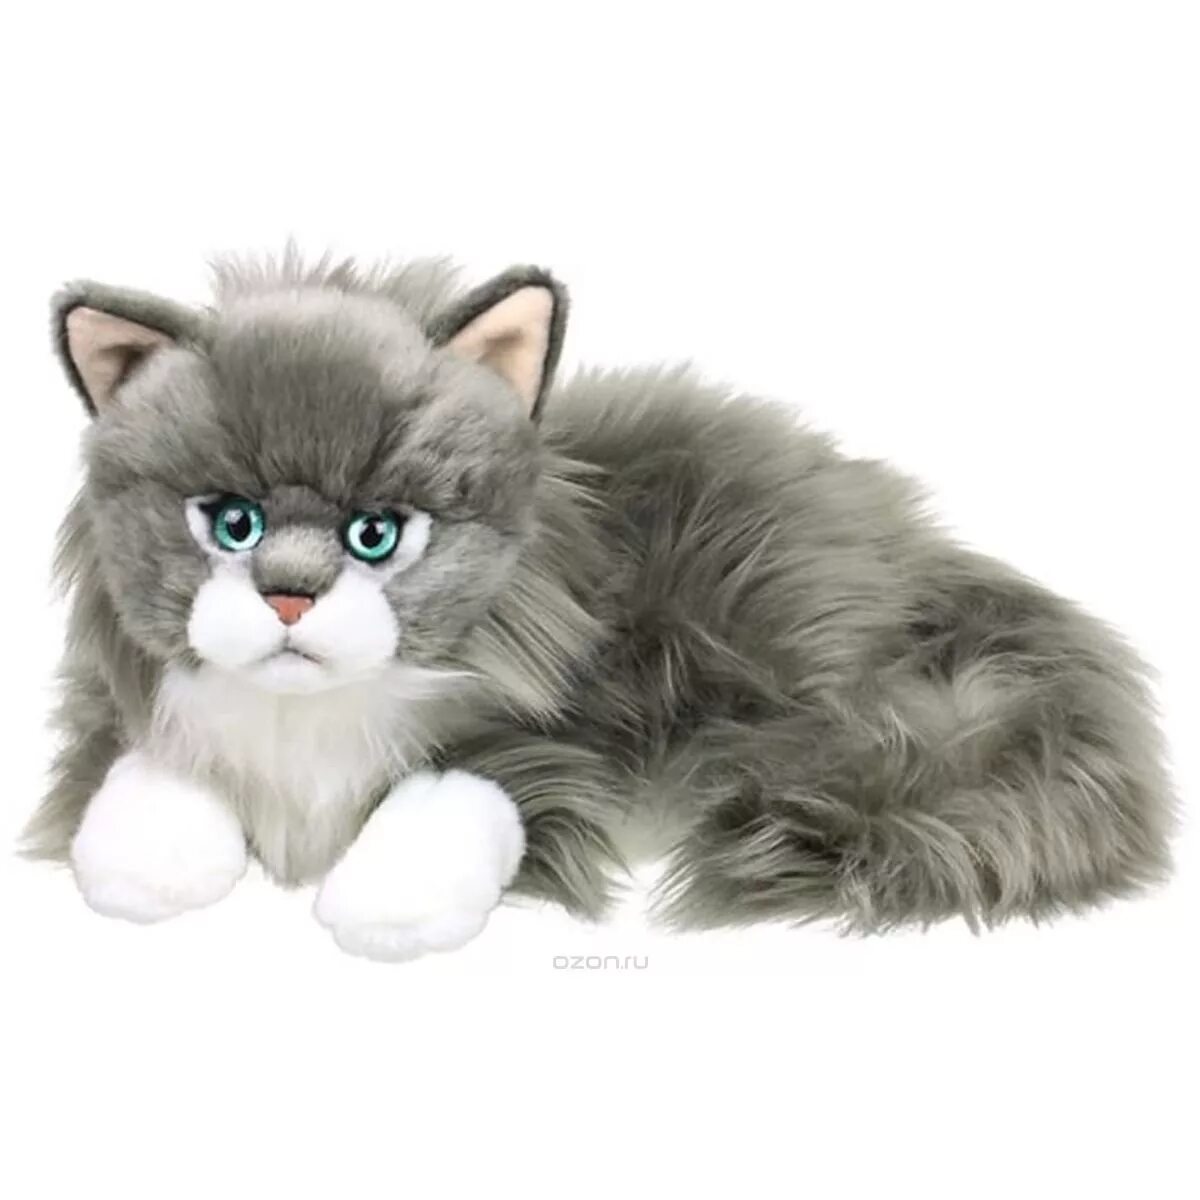 Кошка мягкая купить. Anna Club Plush игрушки кот. Anna Club Plush мягкая игрушка. Мягкая игрушка Hansa персидский кот табби серый с белым 38 см. Игрушка серый котенок.